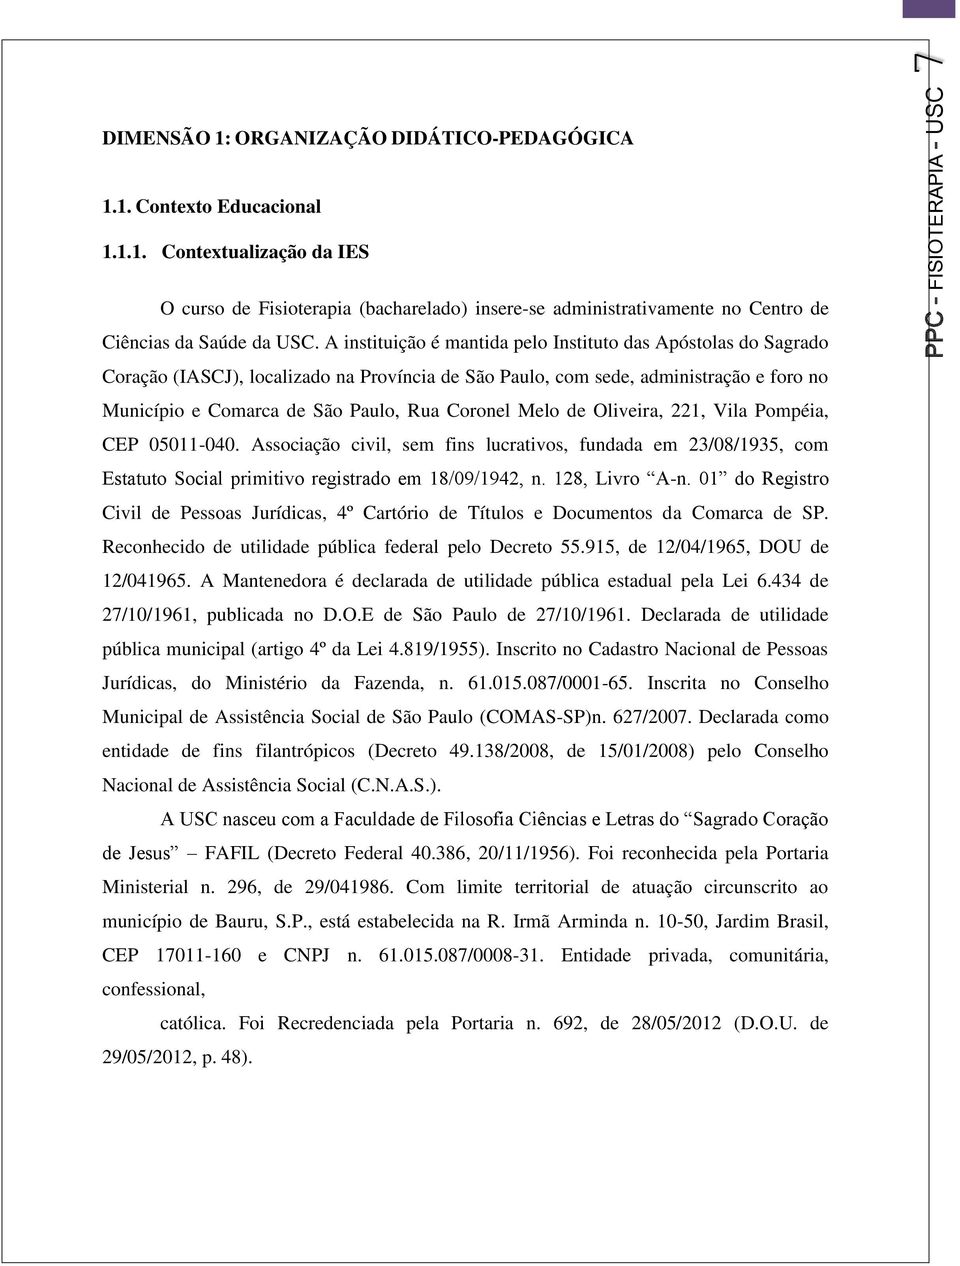 Melo de Oliveira, 221, Vila Pompéia, CEP 05011-040. Associação civil, sem fins lucrativos, fundada em 23/08/1935, com Estatuto Social primitivo registrado em 18/09/1942, n. 128, Livro A-n.